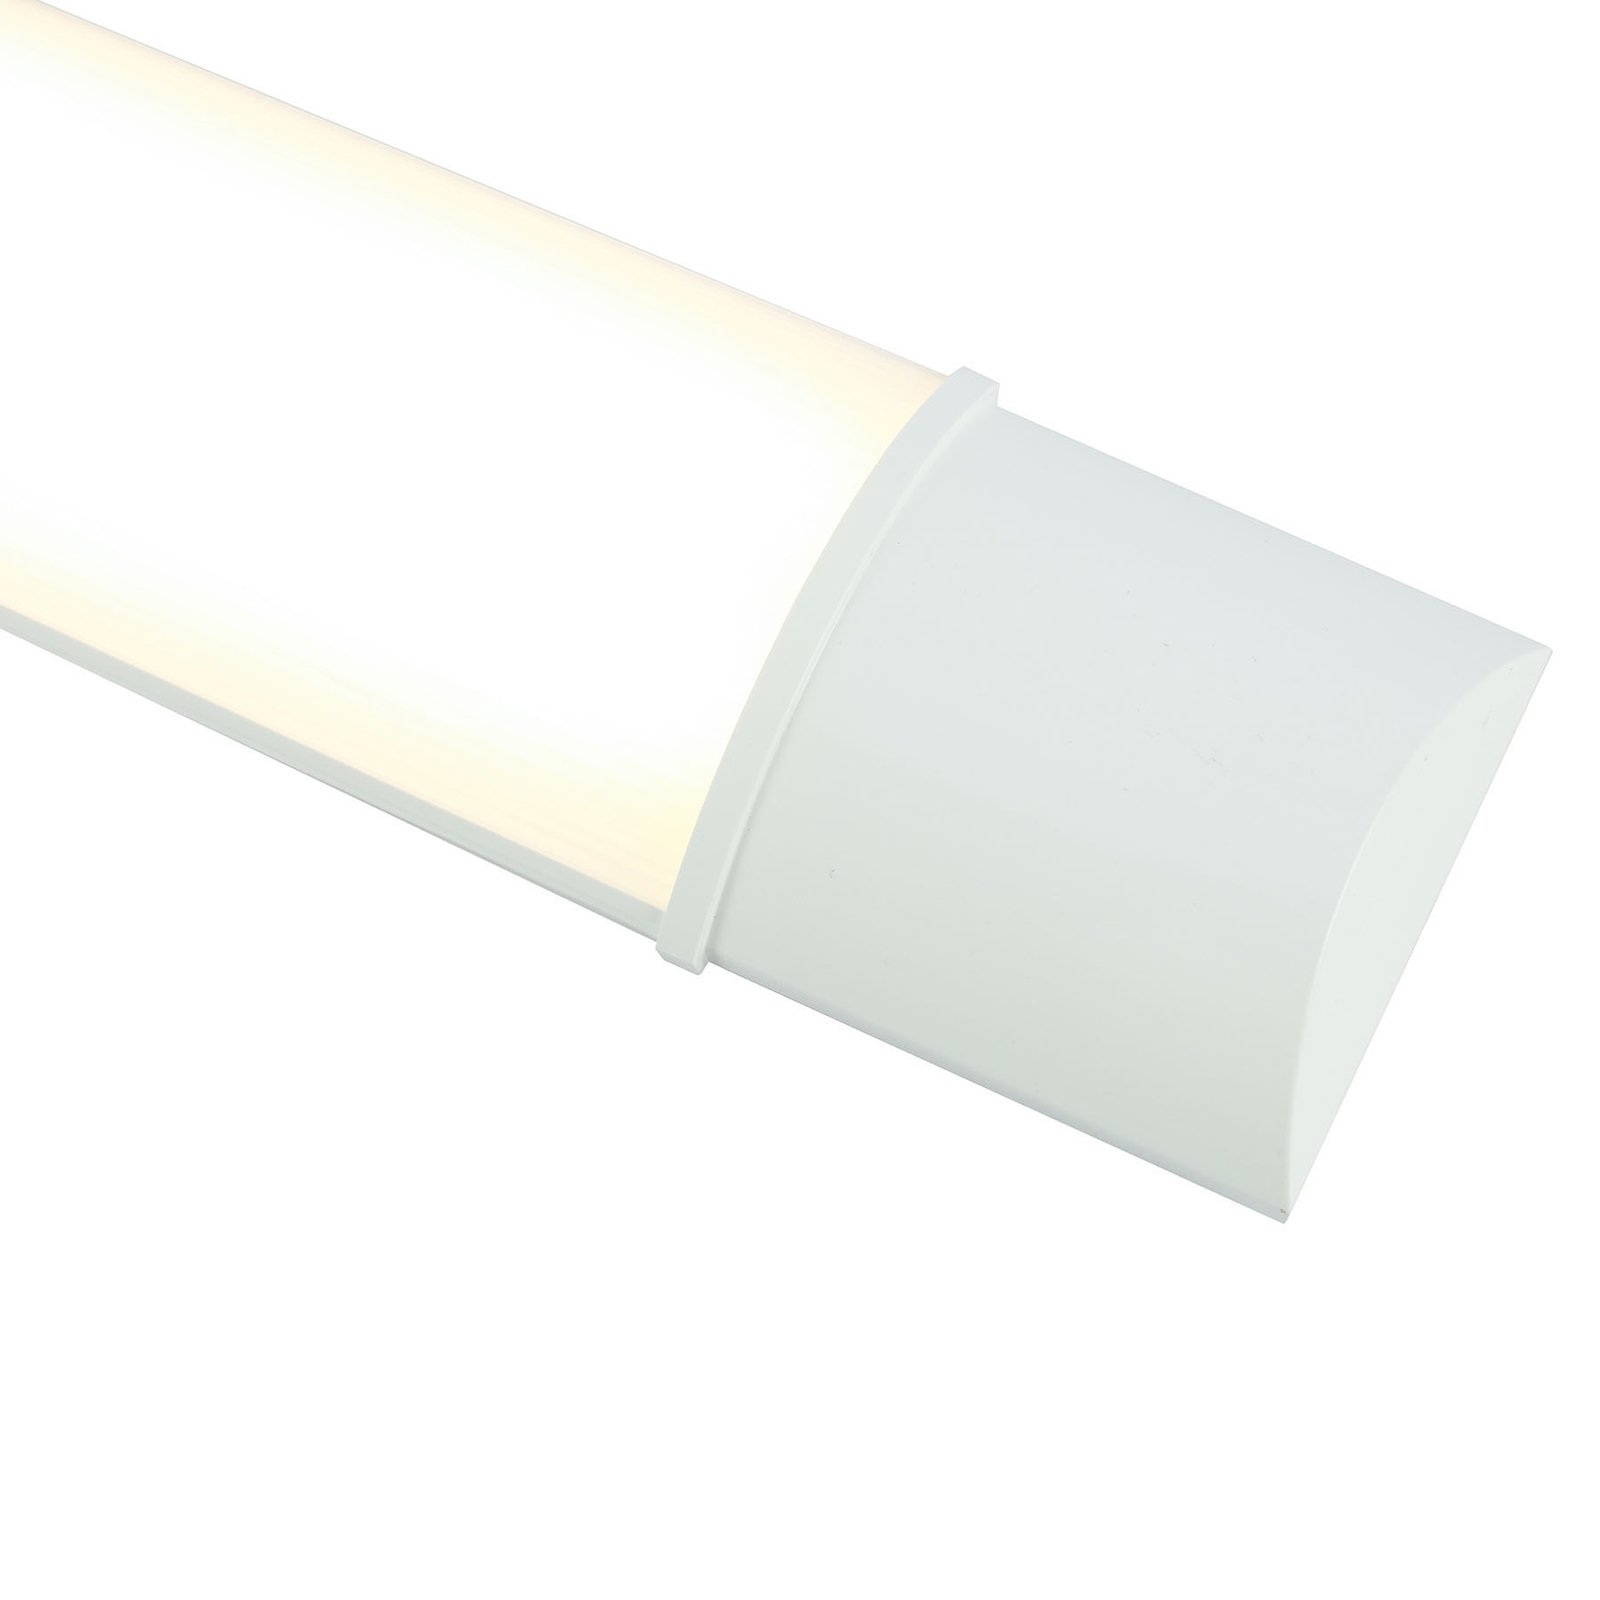 Lampe sous meuble LED Obara, IP20, 90 cm de long